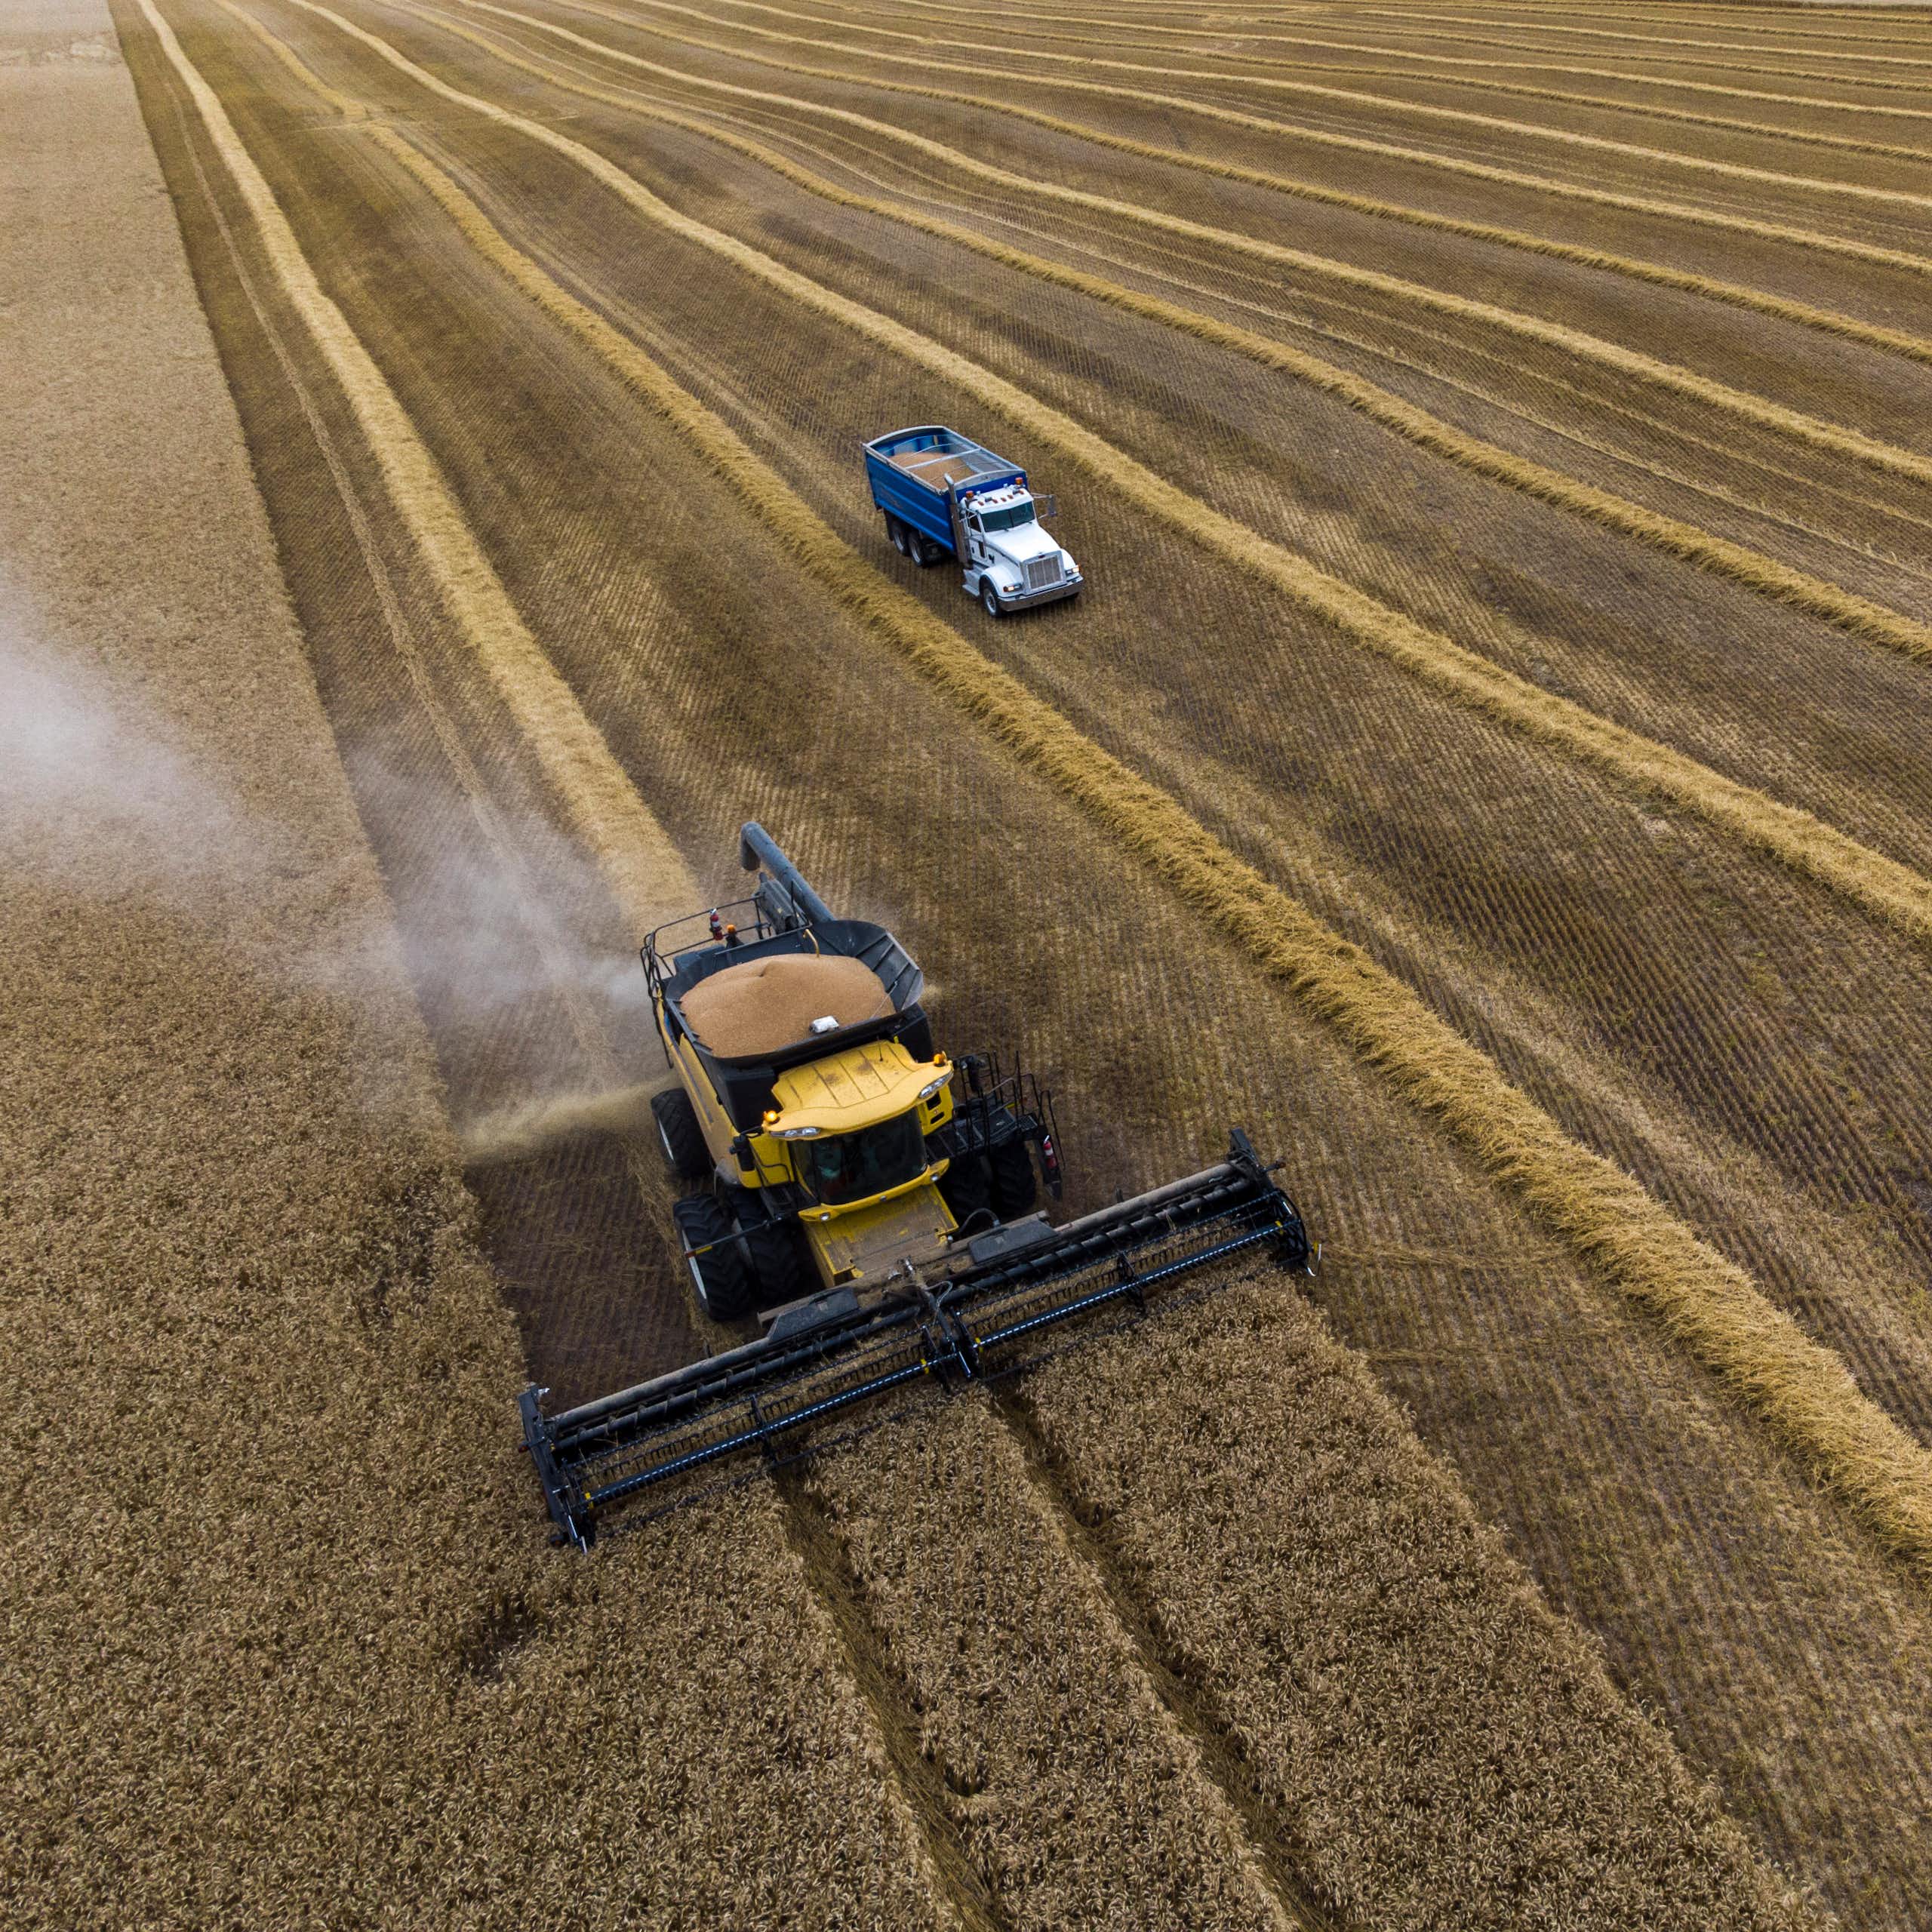 Farm equipment seen driving through a field of crops.